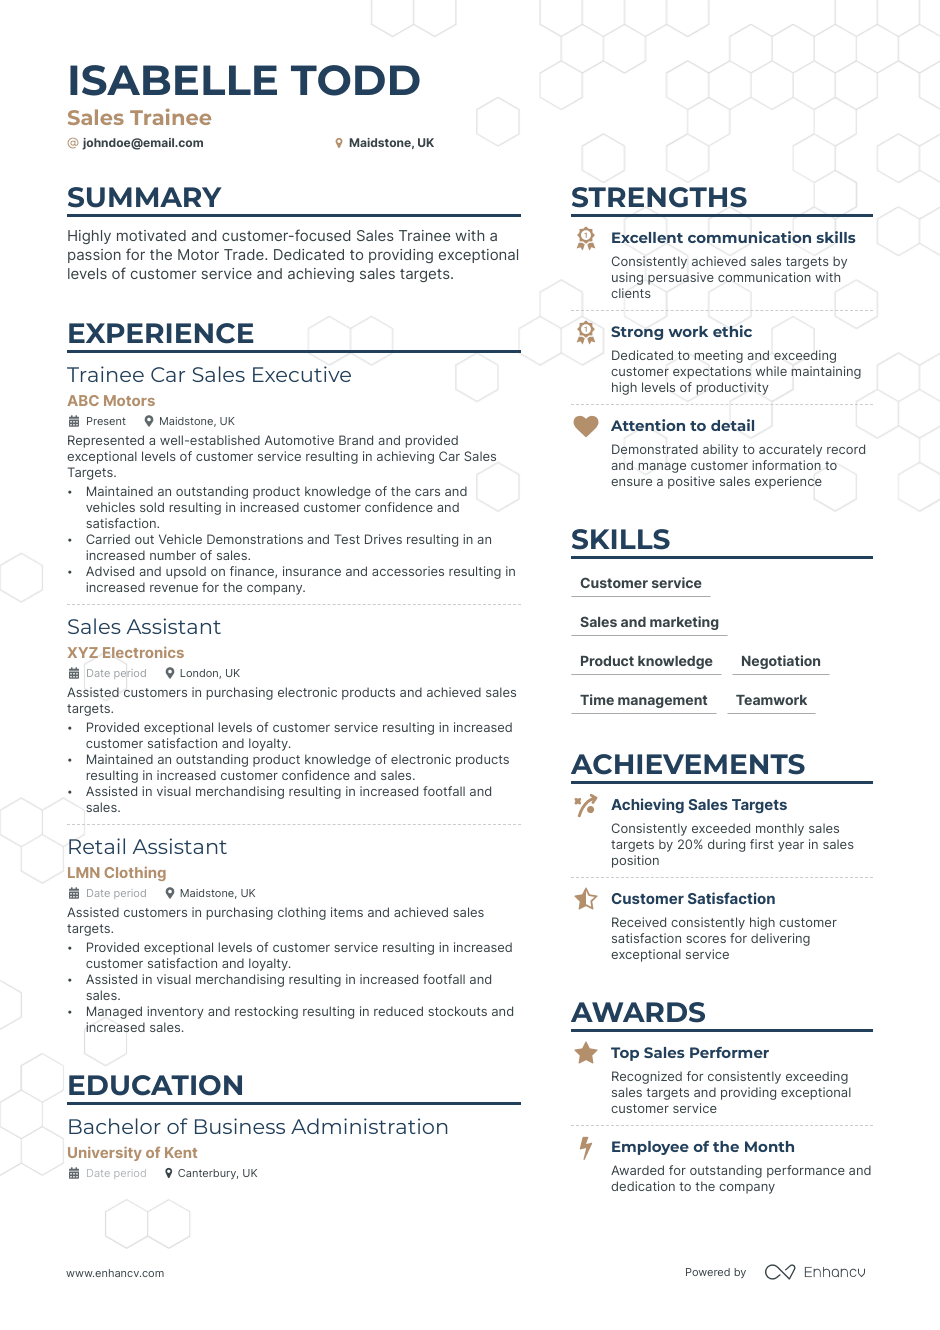 Sales Trainee resume example